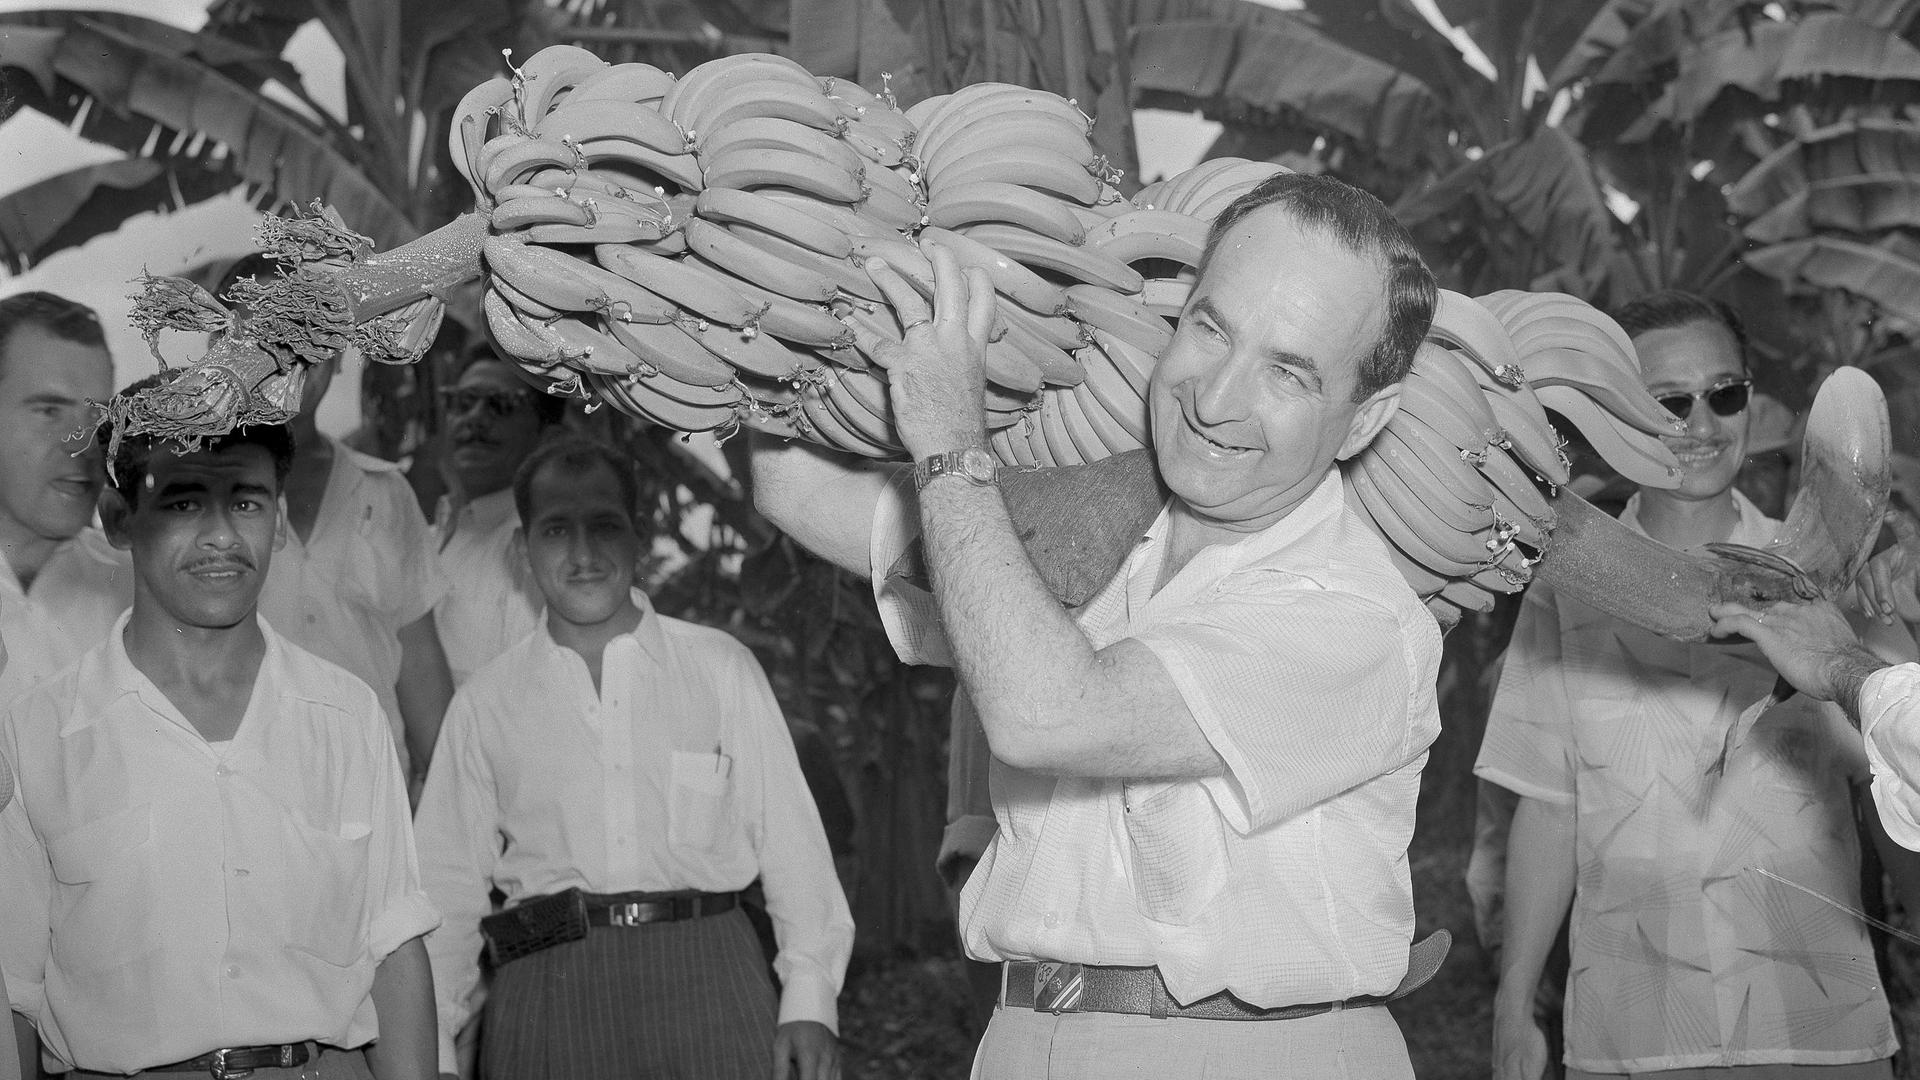 José Figueres, früherer Präsident Costa Ricas, beim Tragen einer Bananenstaude am 22. Februar 1955